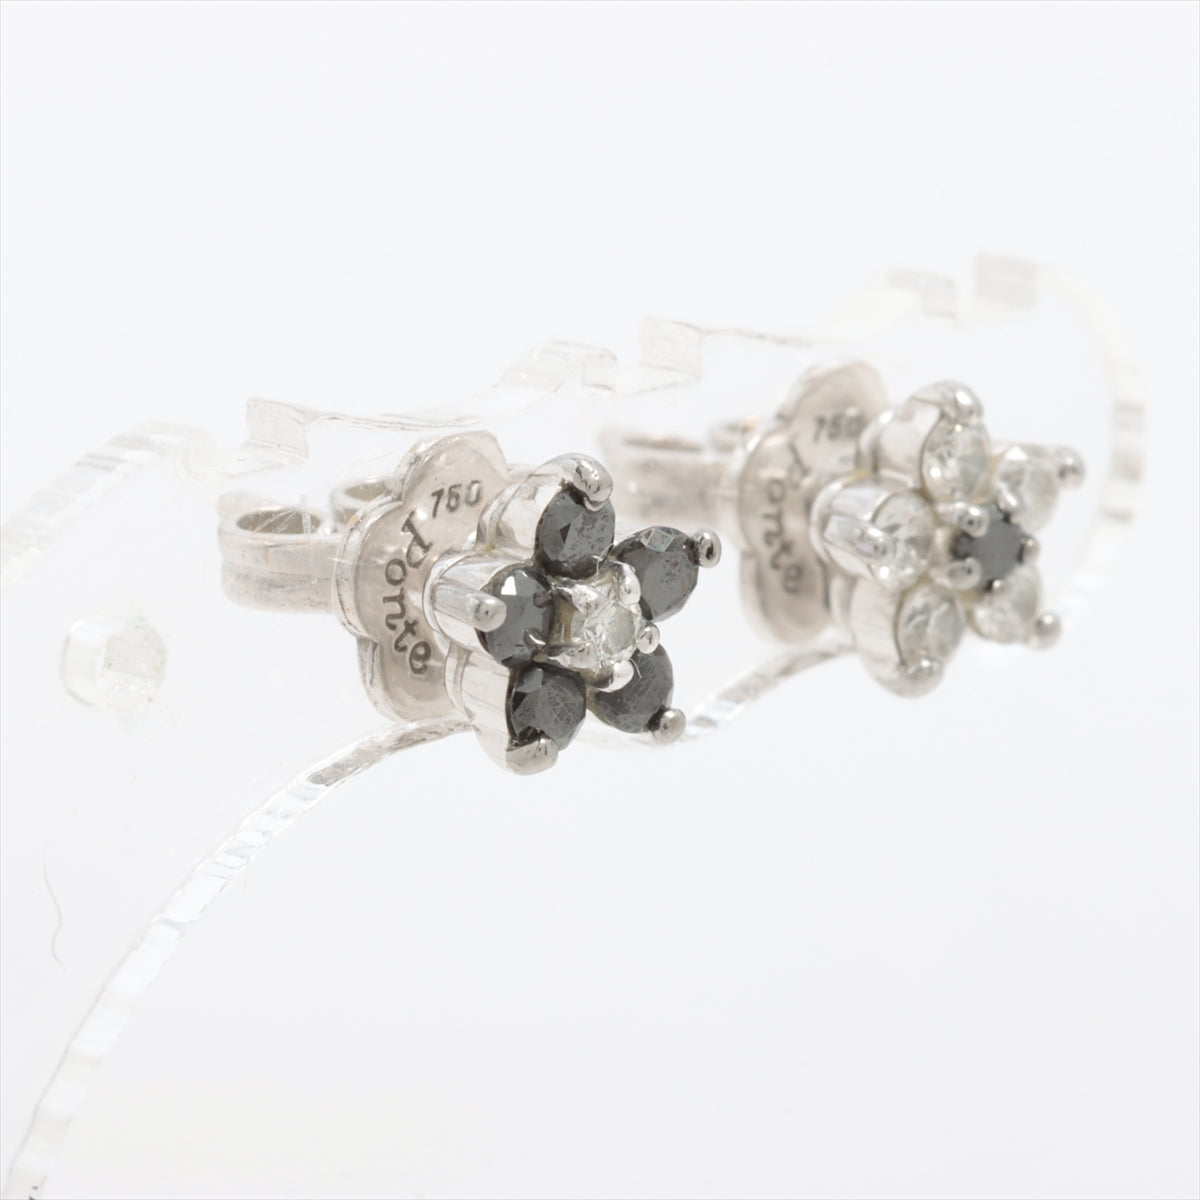 Ponte Vecchio Black diamond diamond Piercing jewelry 750(WG)×K18WG 2.5g 0.23 D0.19